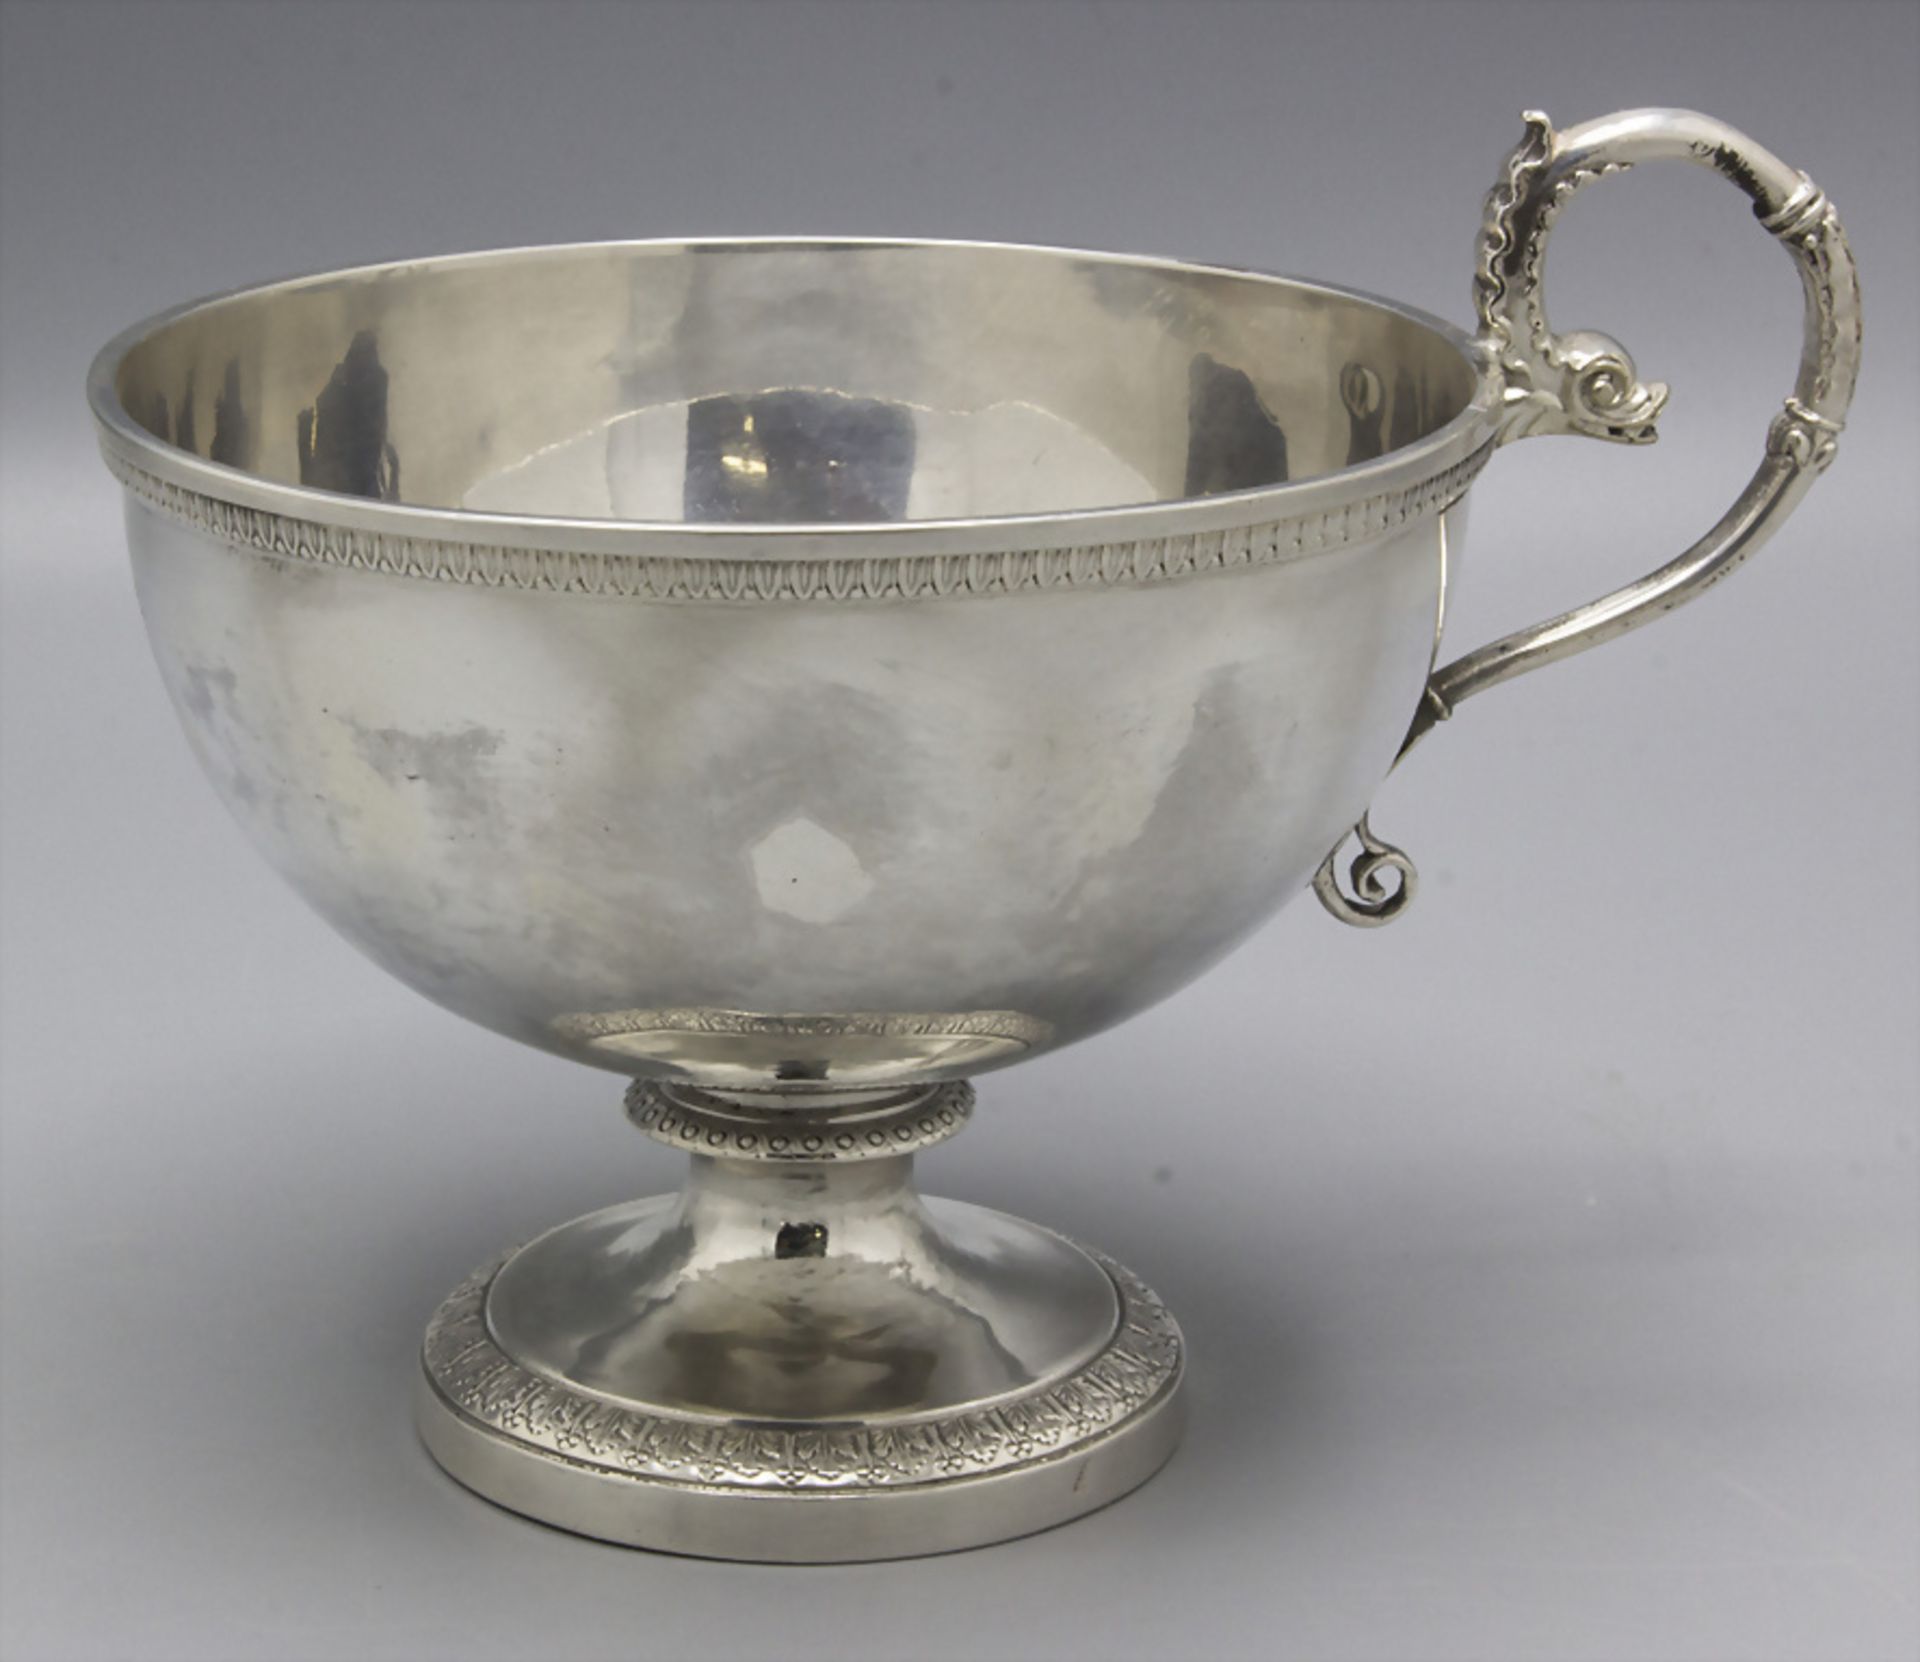 Silberschale / A silver bowl, Paris, 1819-1839